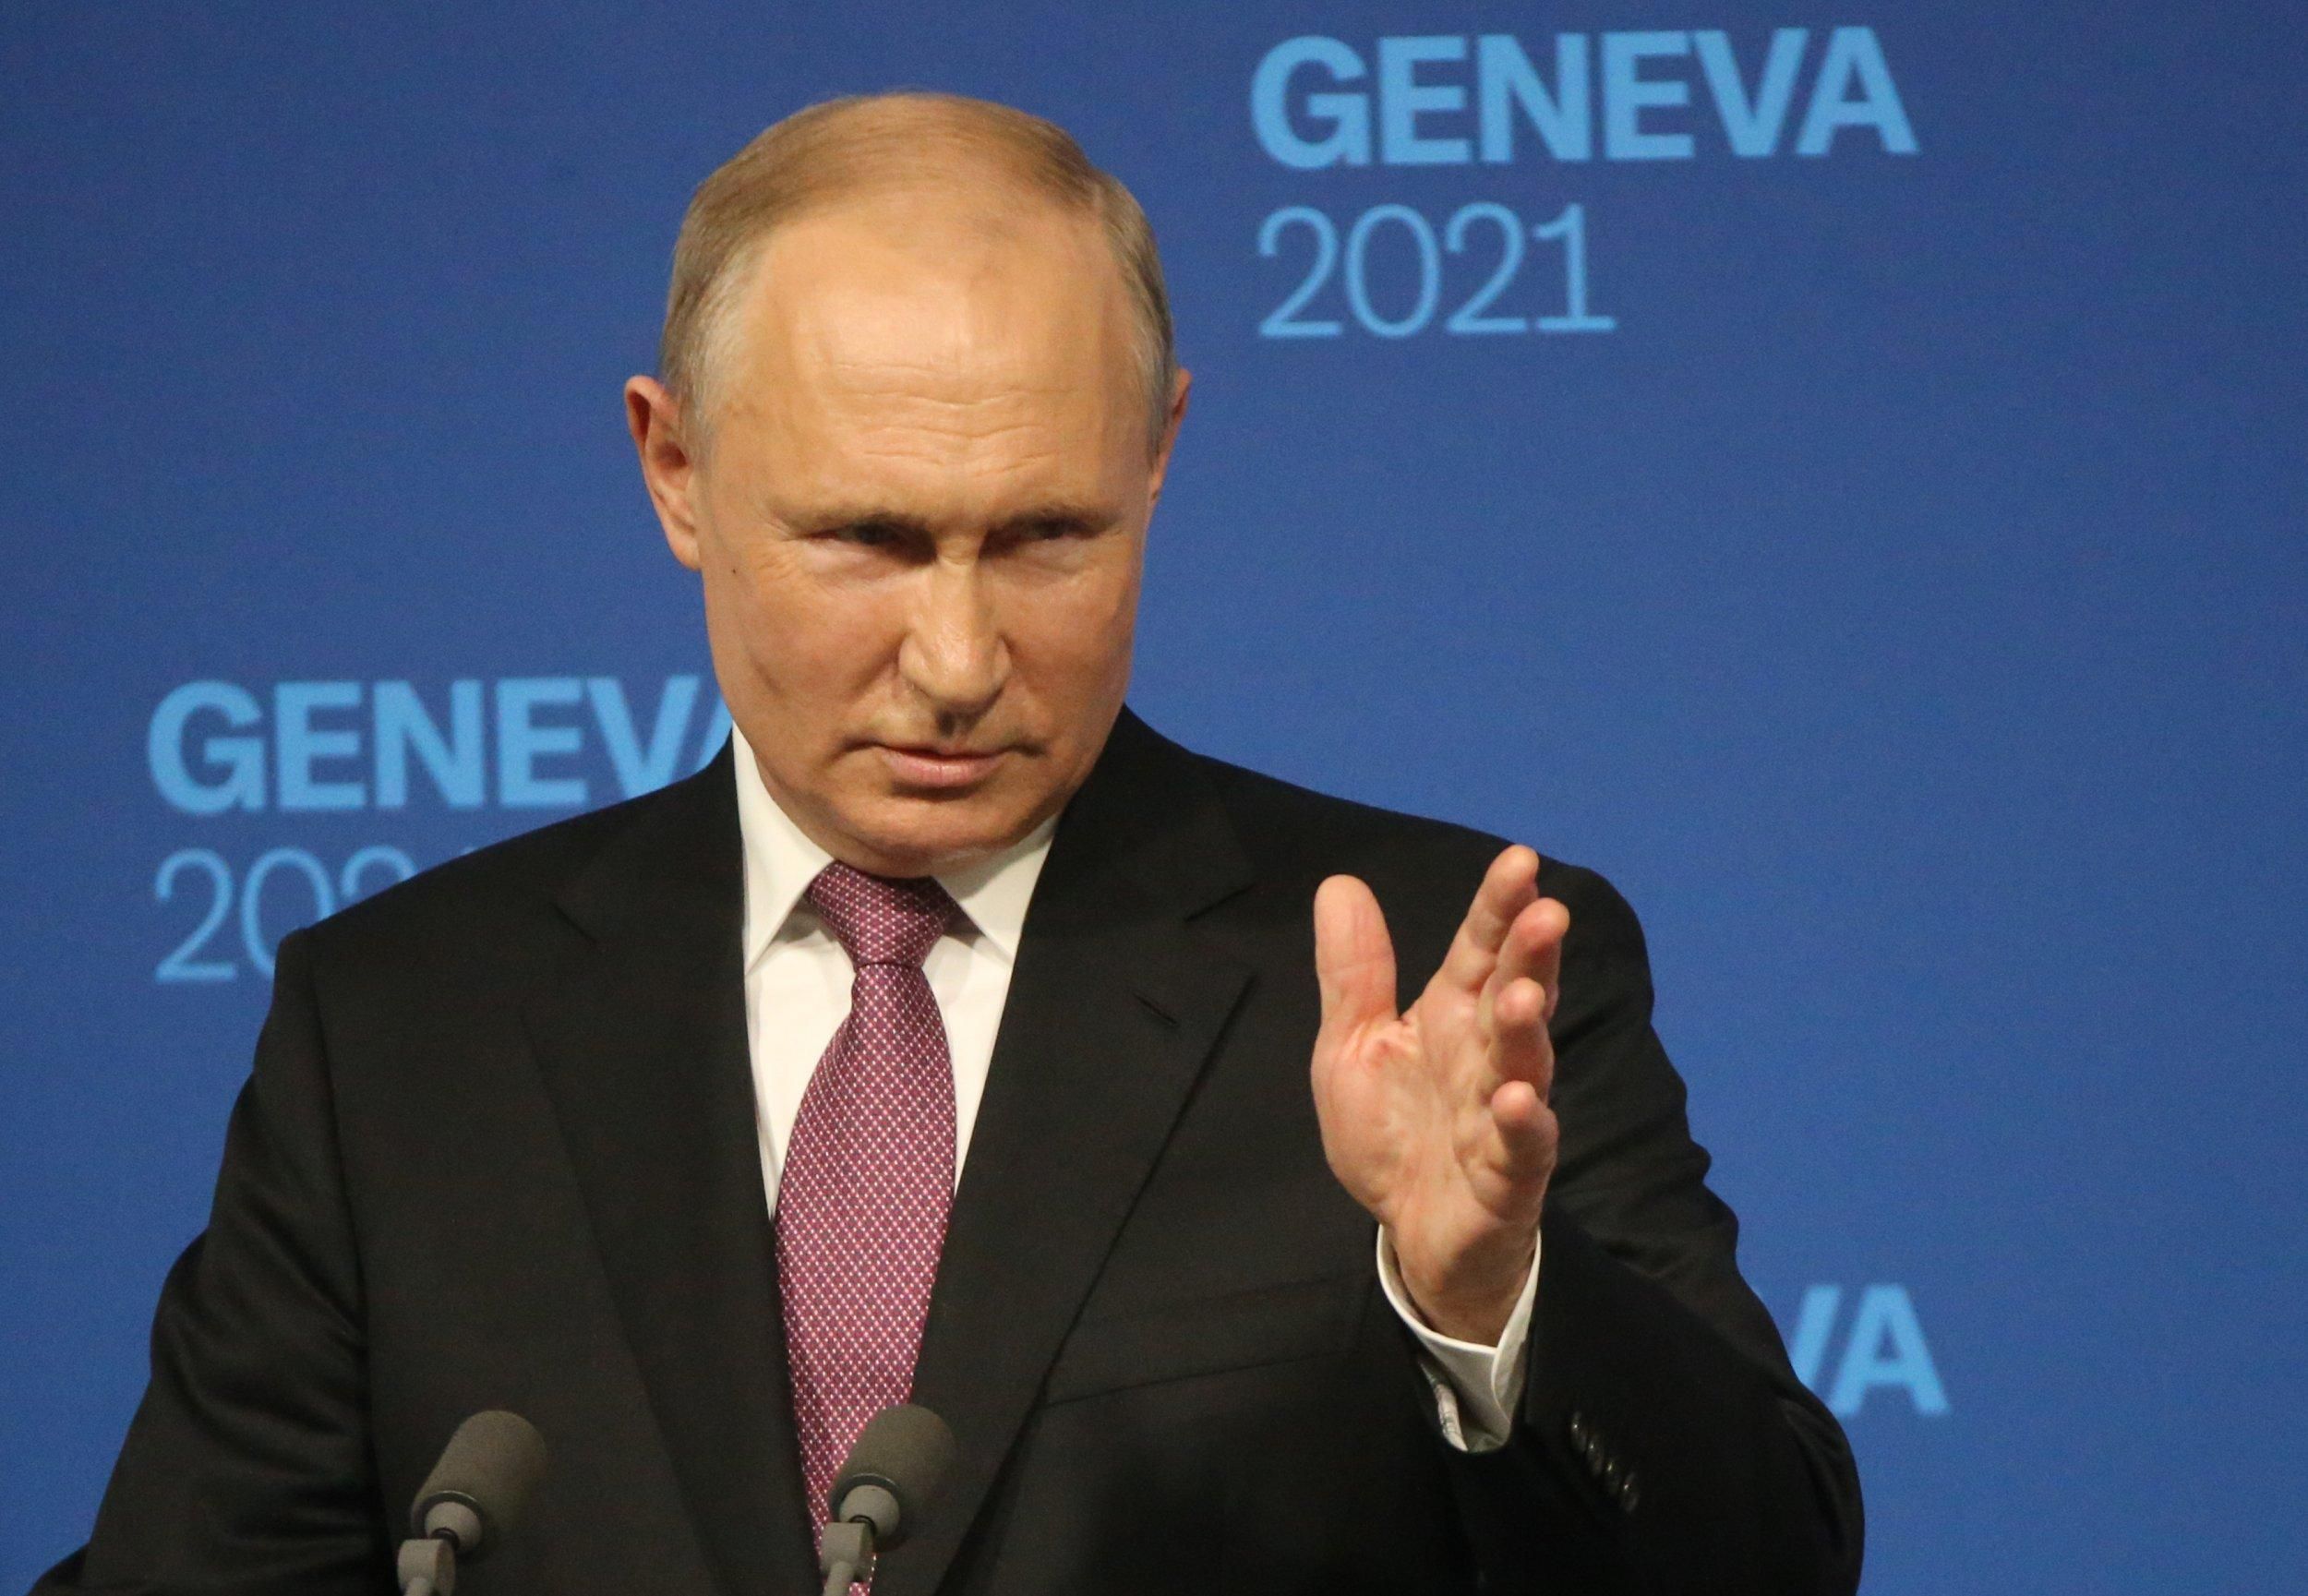 Не верю, что он собирается остановиться, – Волкер назвал план Путина на ближайший период